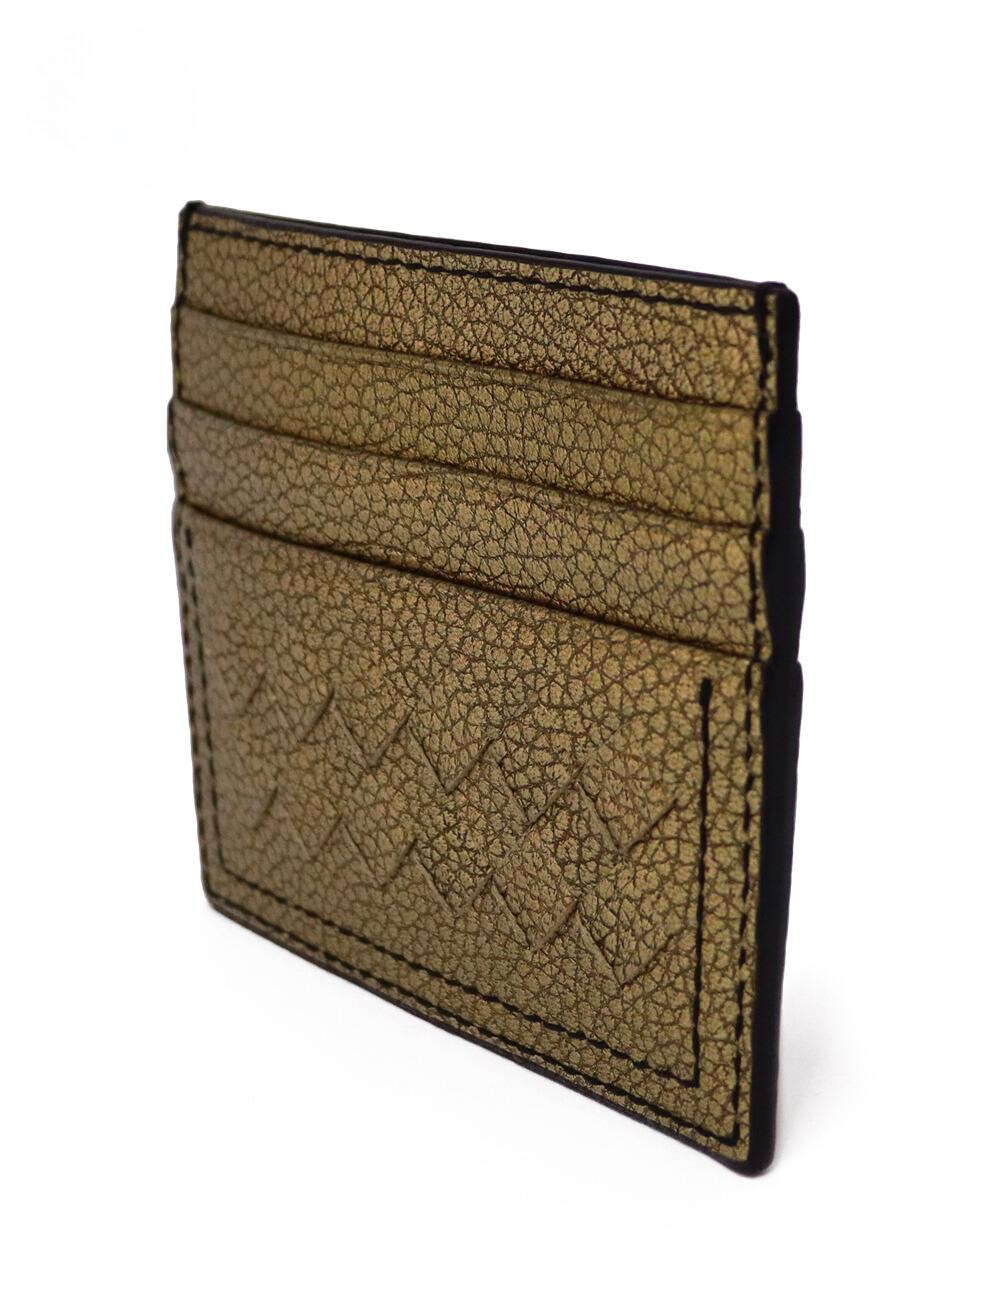 Bottega Veneta Bronze Intrecciato Leather Card Holder In Excellent Condition For Sale In Amman, JO